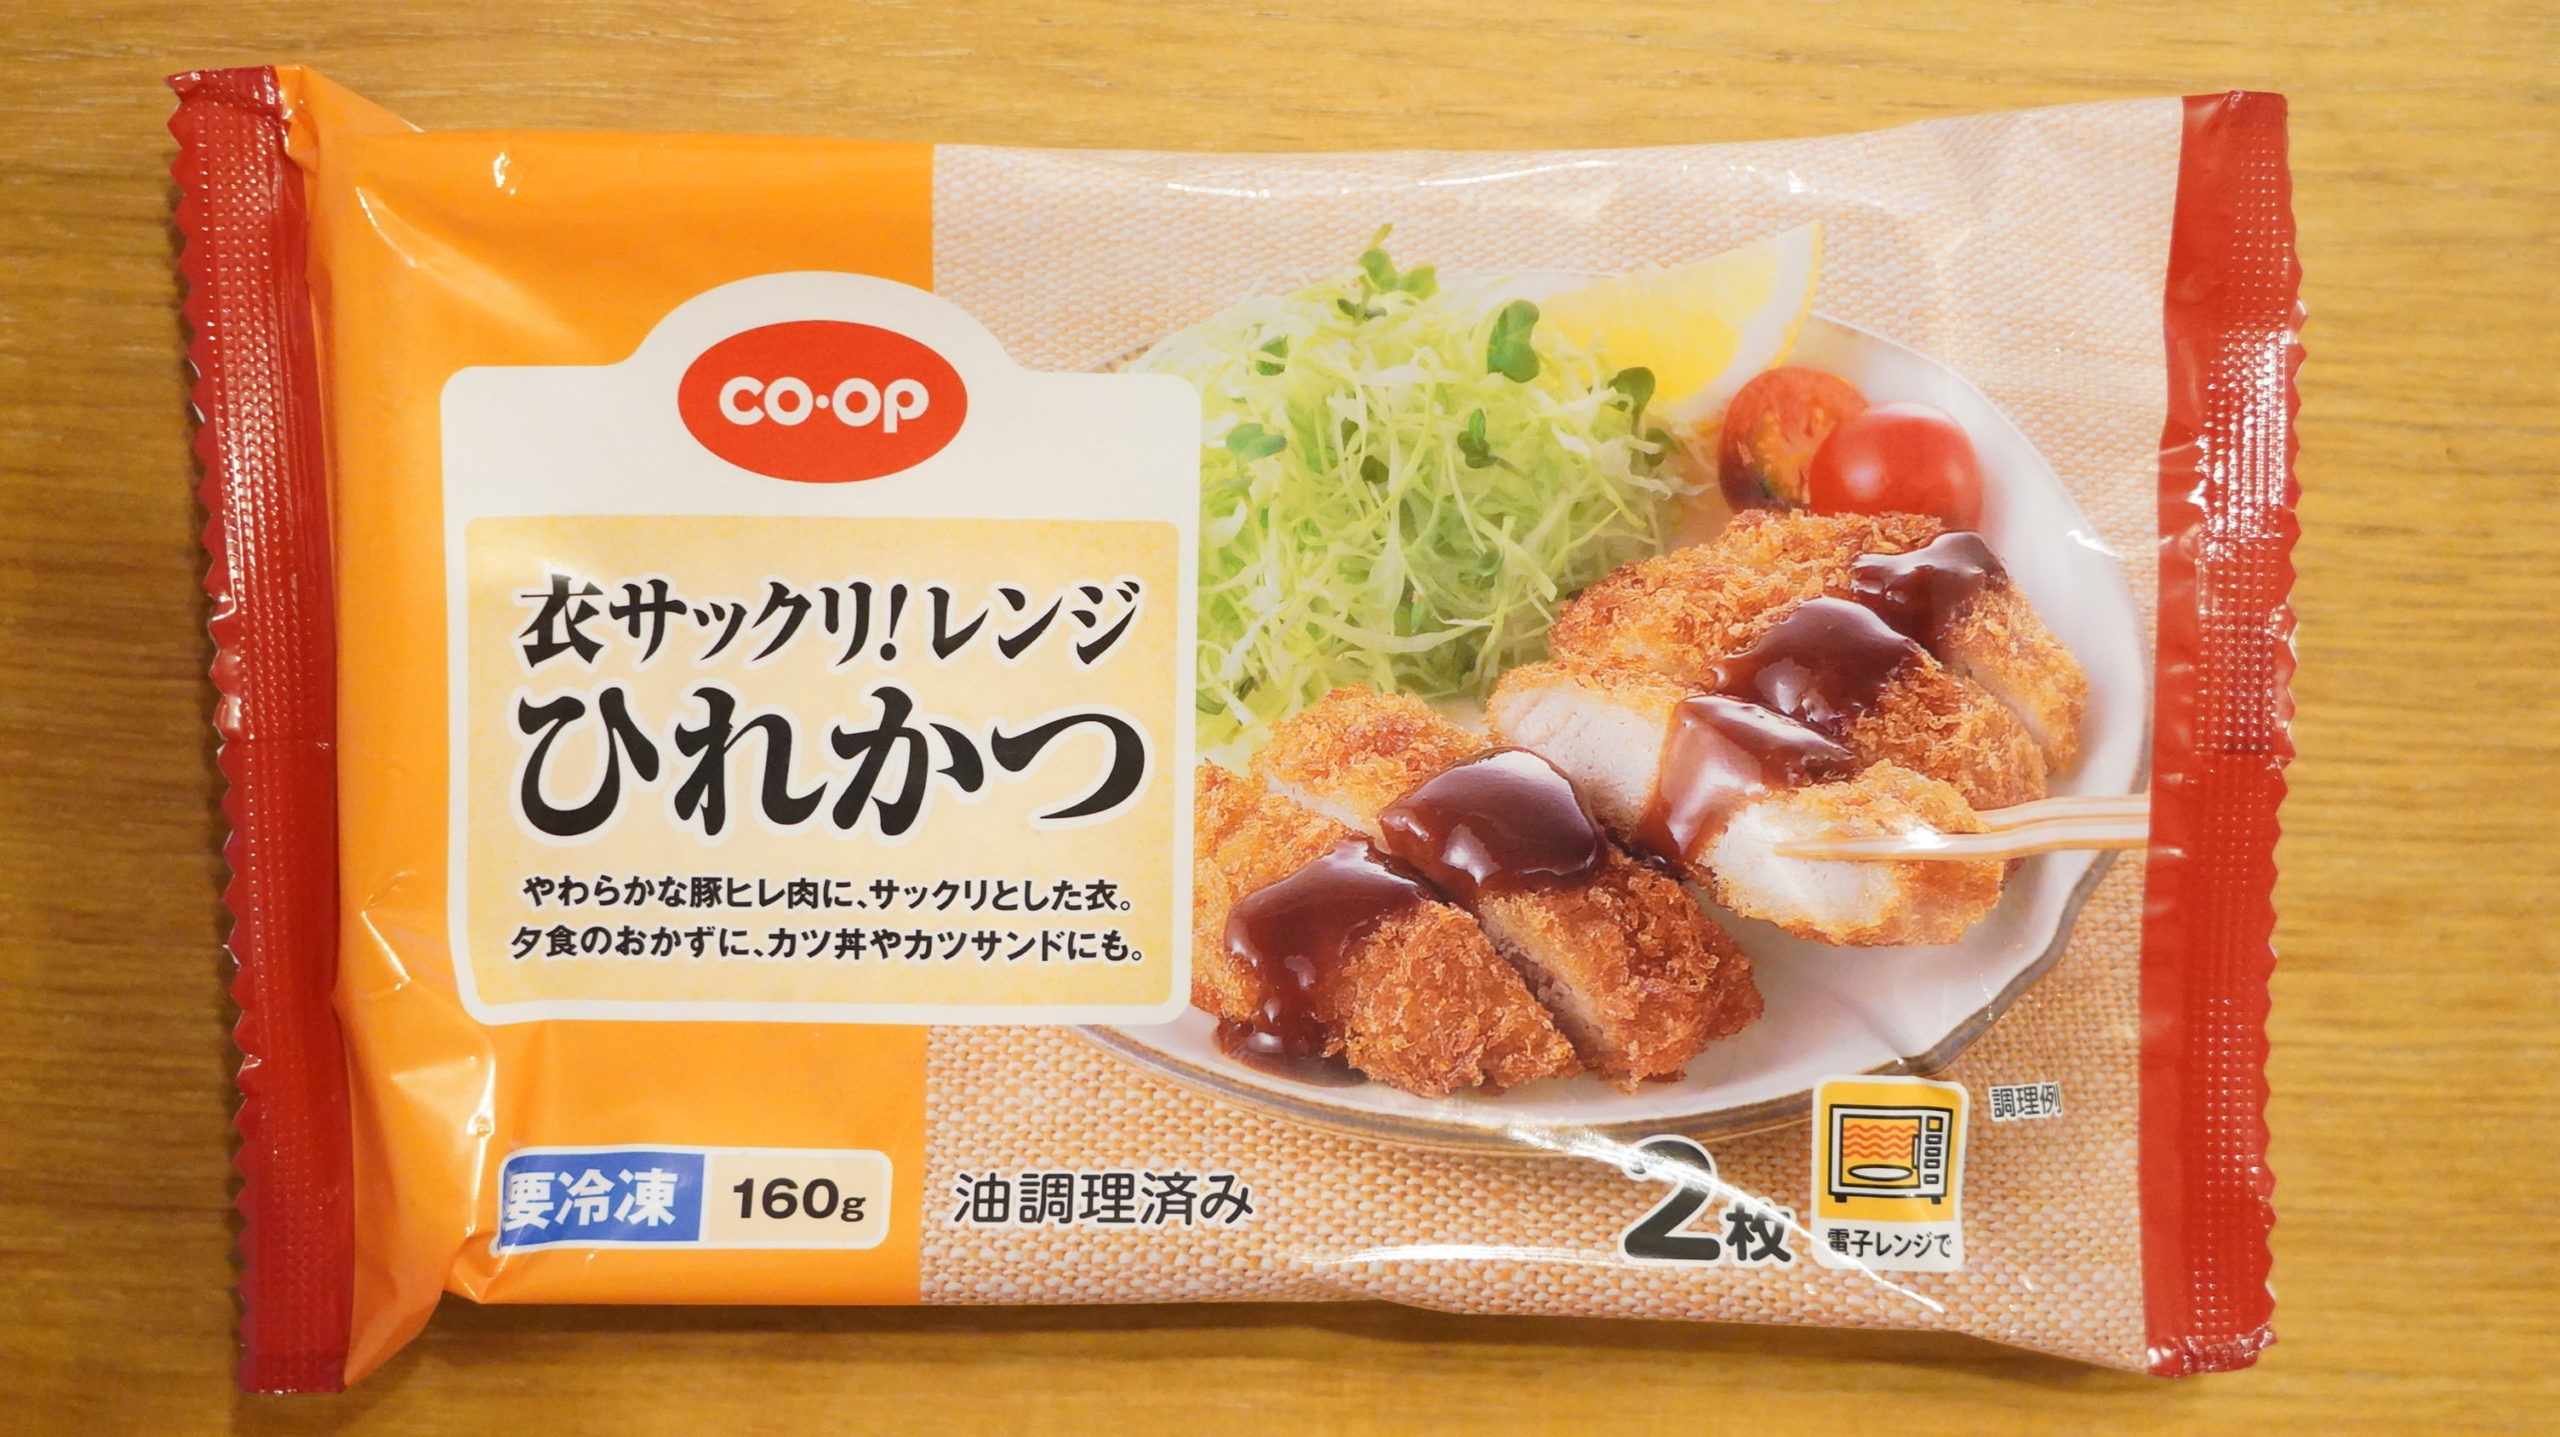 生協coop宅配の冷凍食品・ニチレイ「衣サックリ！レンジひれかつ」のパッケージ写真